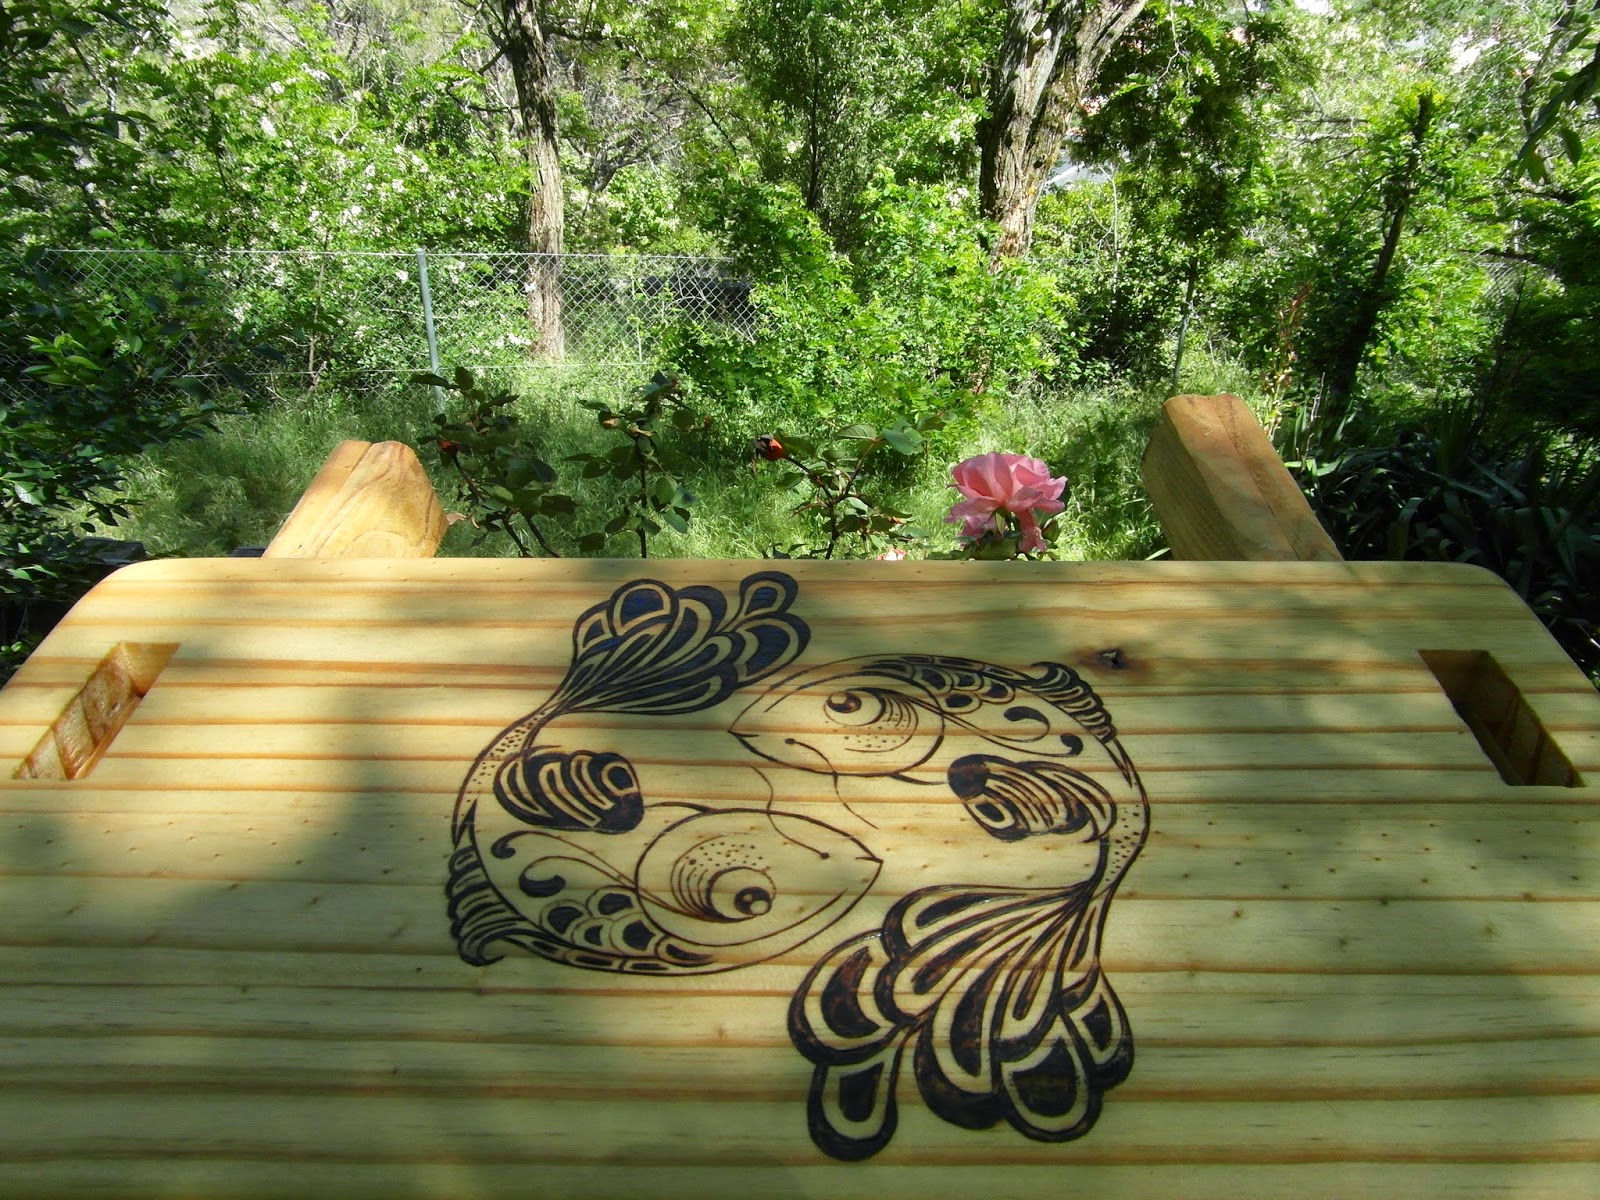 secado del banquito de meditación artesanal en madera